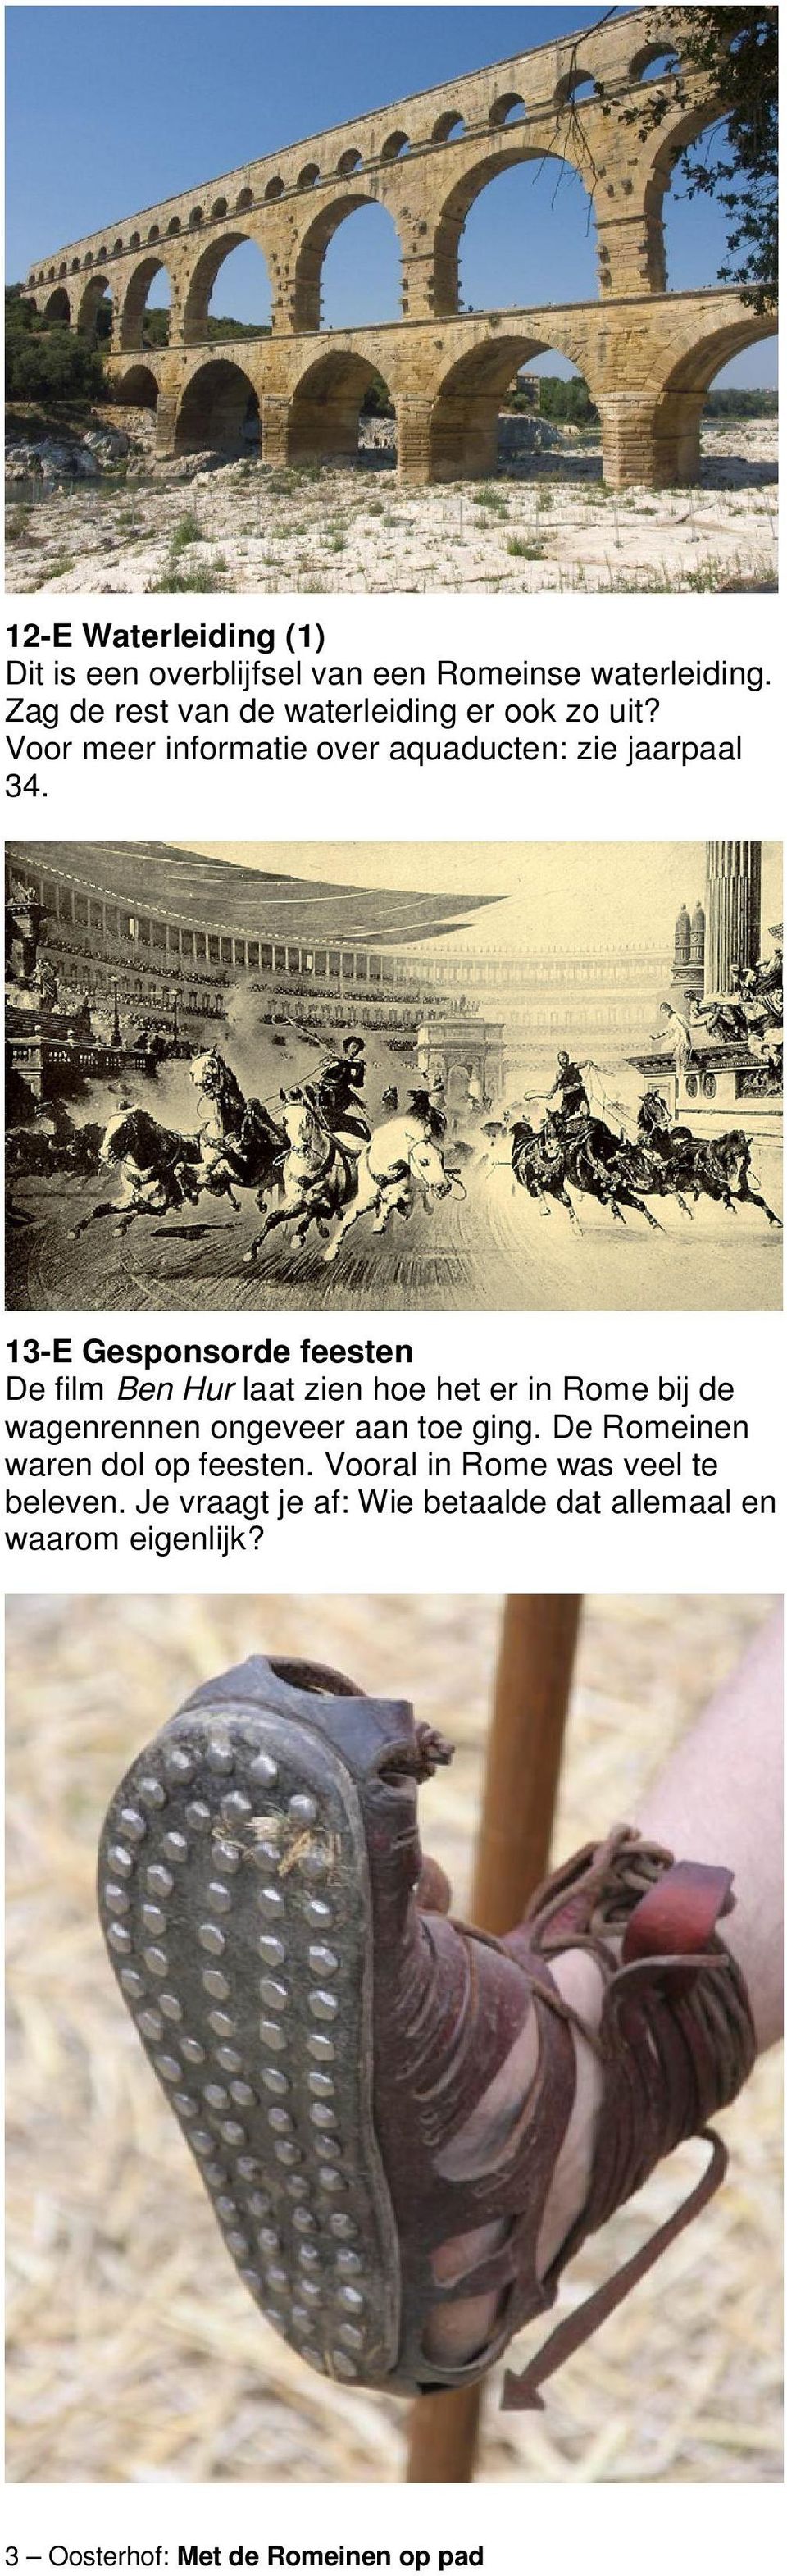 13-E Gesponsorde feesten De film Ben Hur laat zien hoe het er in Rome bij de wagenrennen ongeveer aan toe ging.